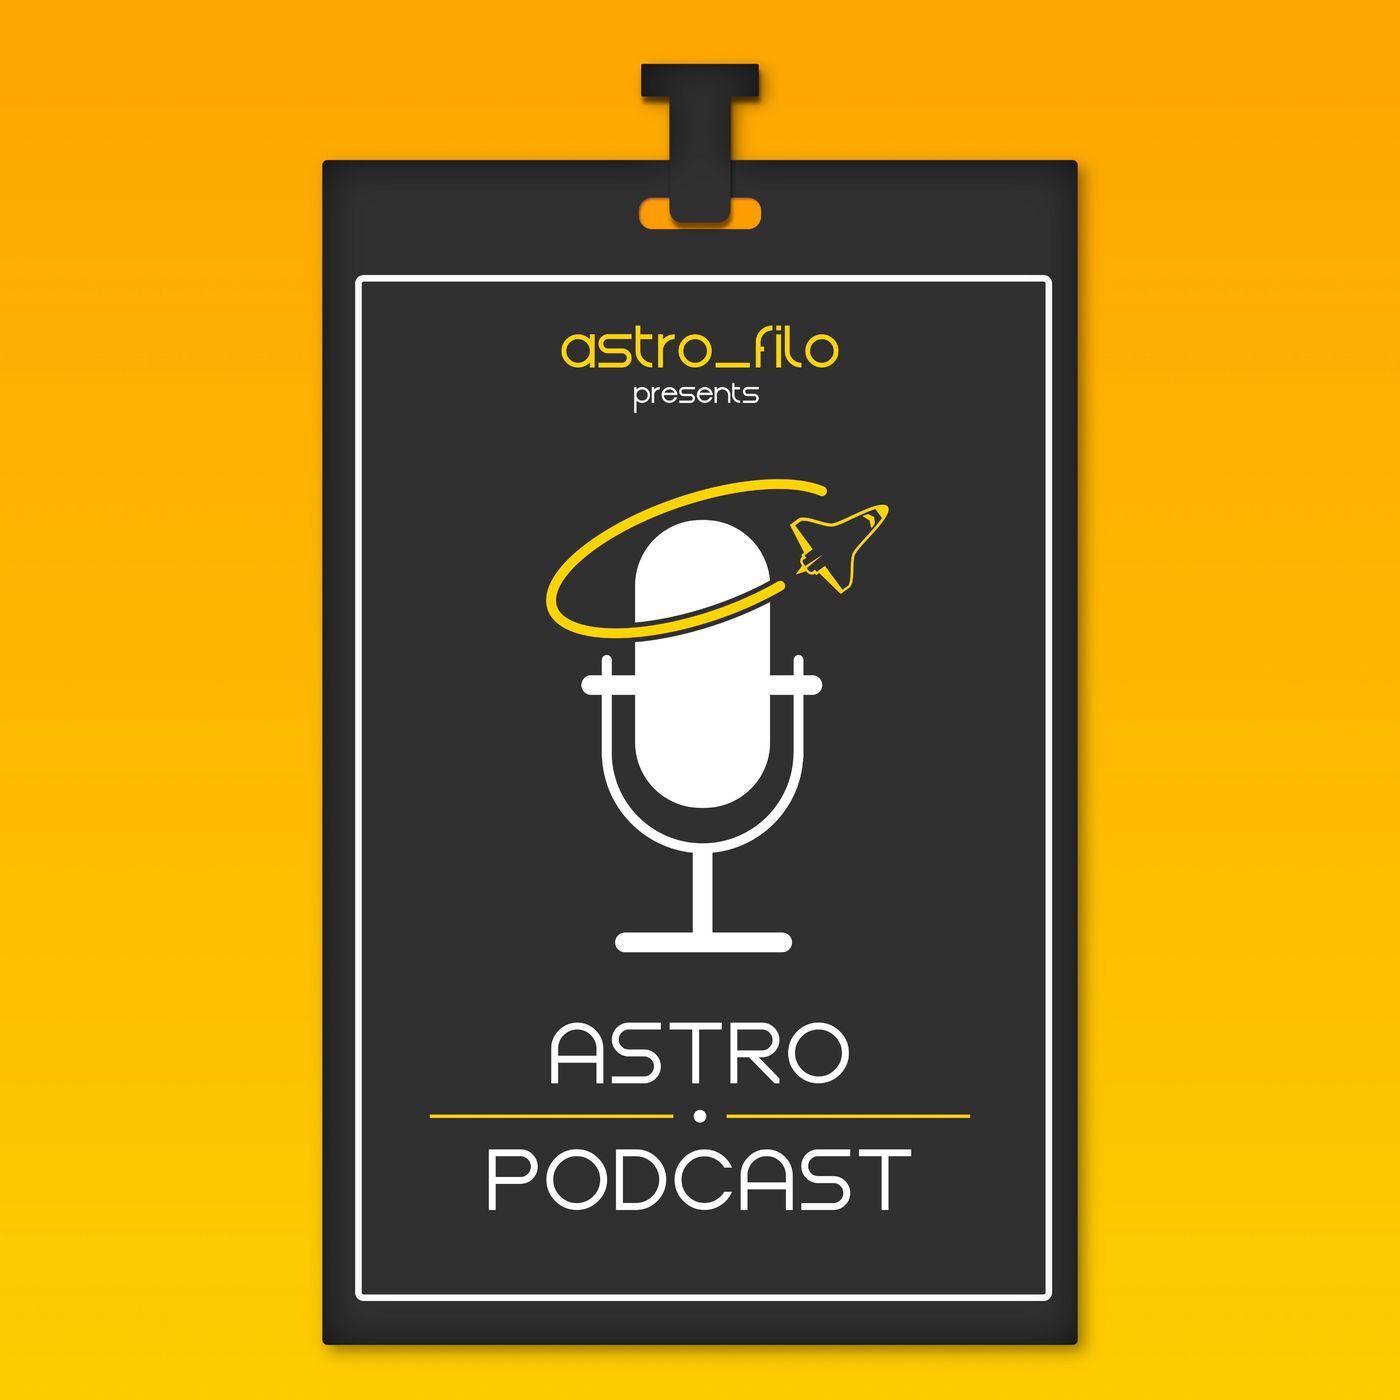 Astro Podcast